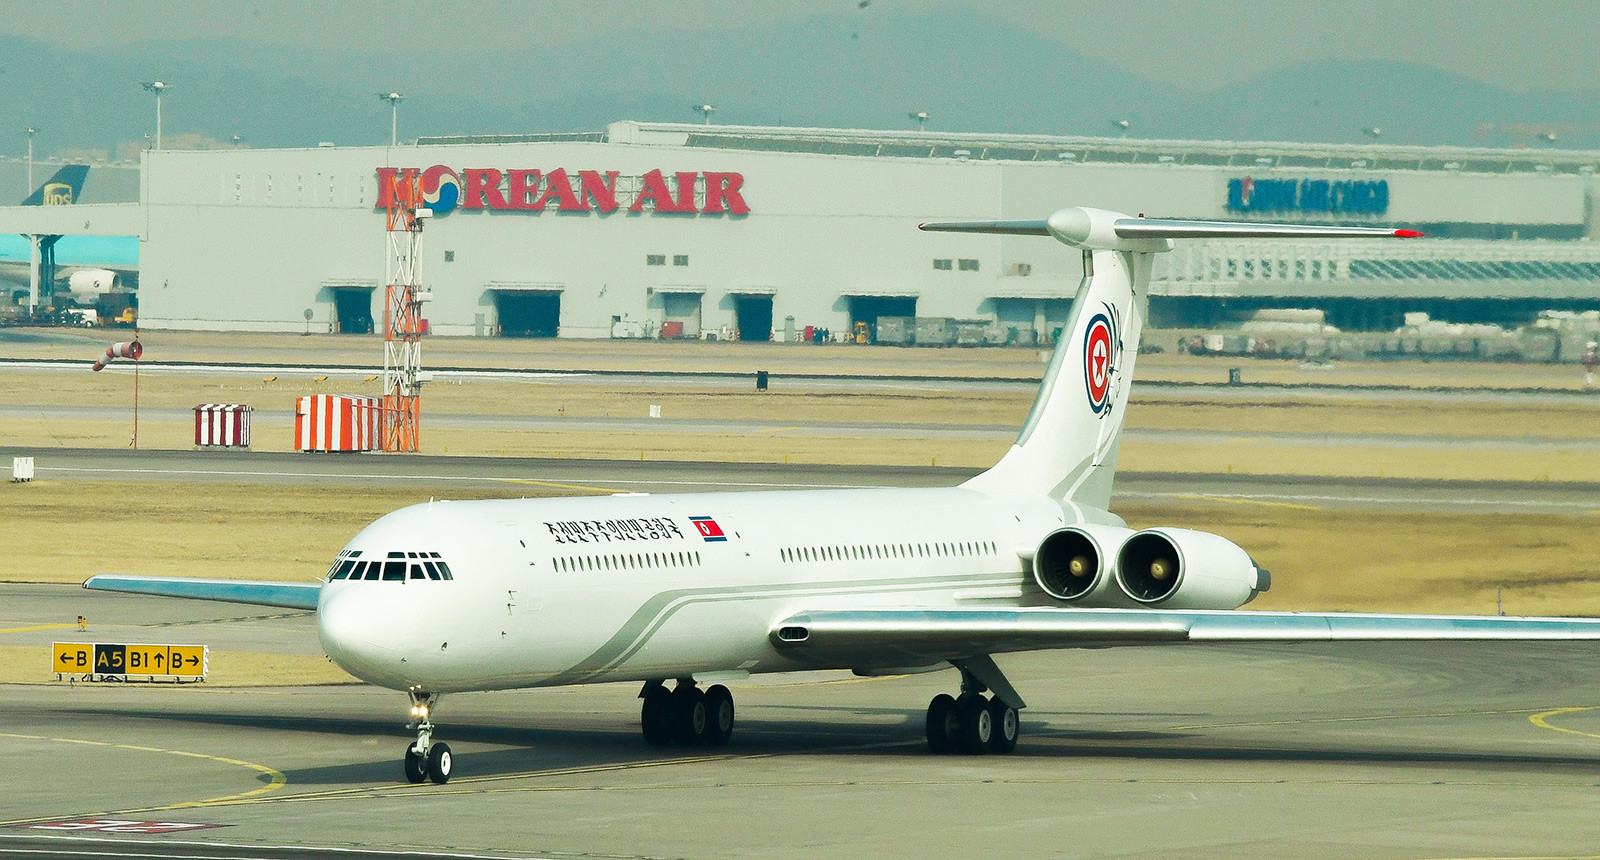 北朝鮮の首脳を載せている北朝鮮の「Il-62」飛行機 。2018年平昌オリンピックへ向かっている金与正が中にいると報じられた。2018年2月 9日。